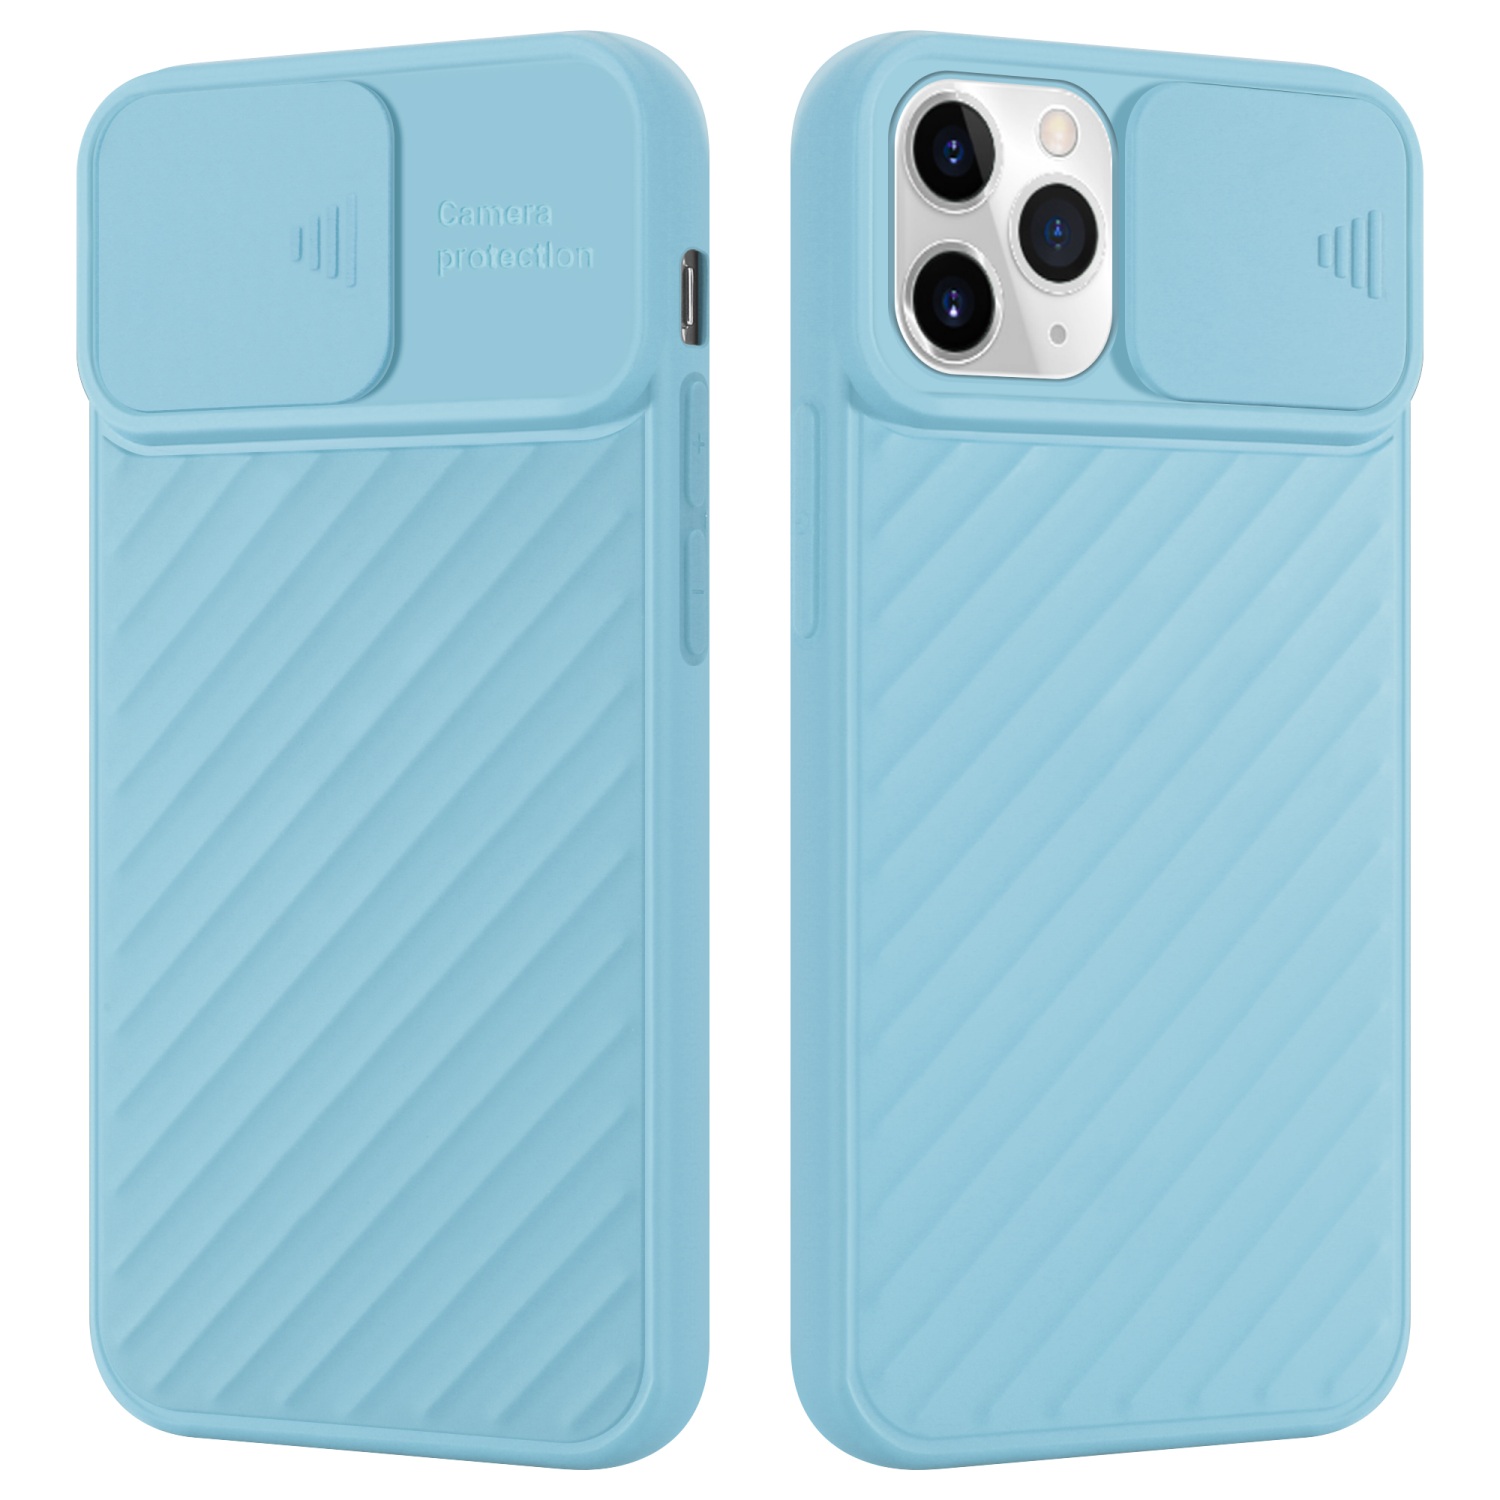 Coque pour Apple iPhone 11 PRO MAX en Mat Turquoise Housse de protection Étui en silicone TPU flexible et avec protection pour appareil photo